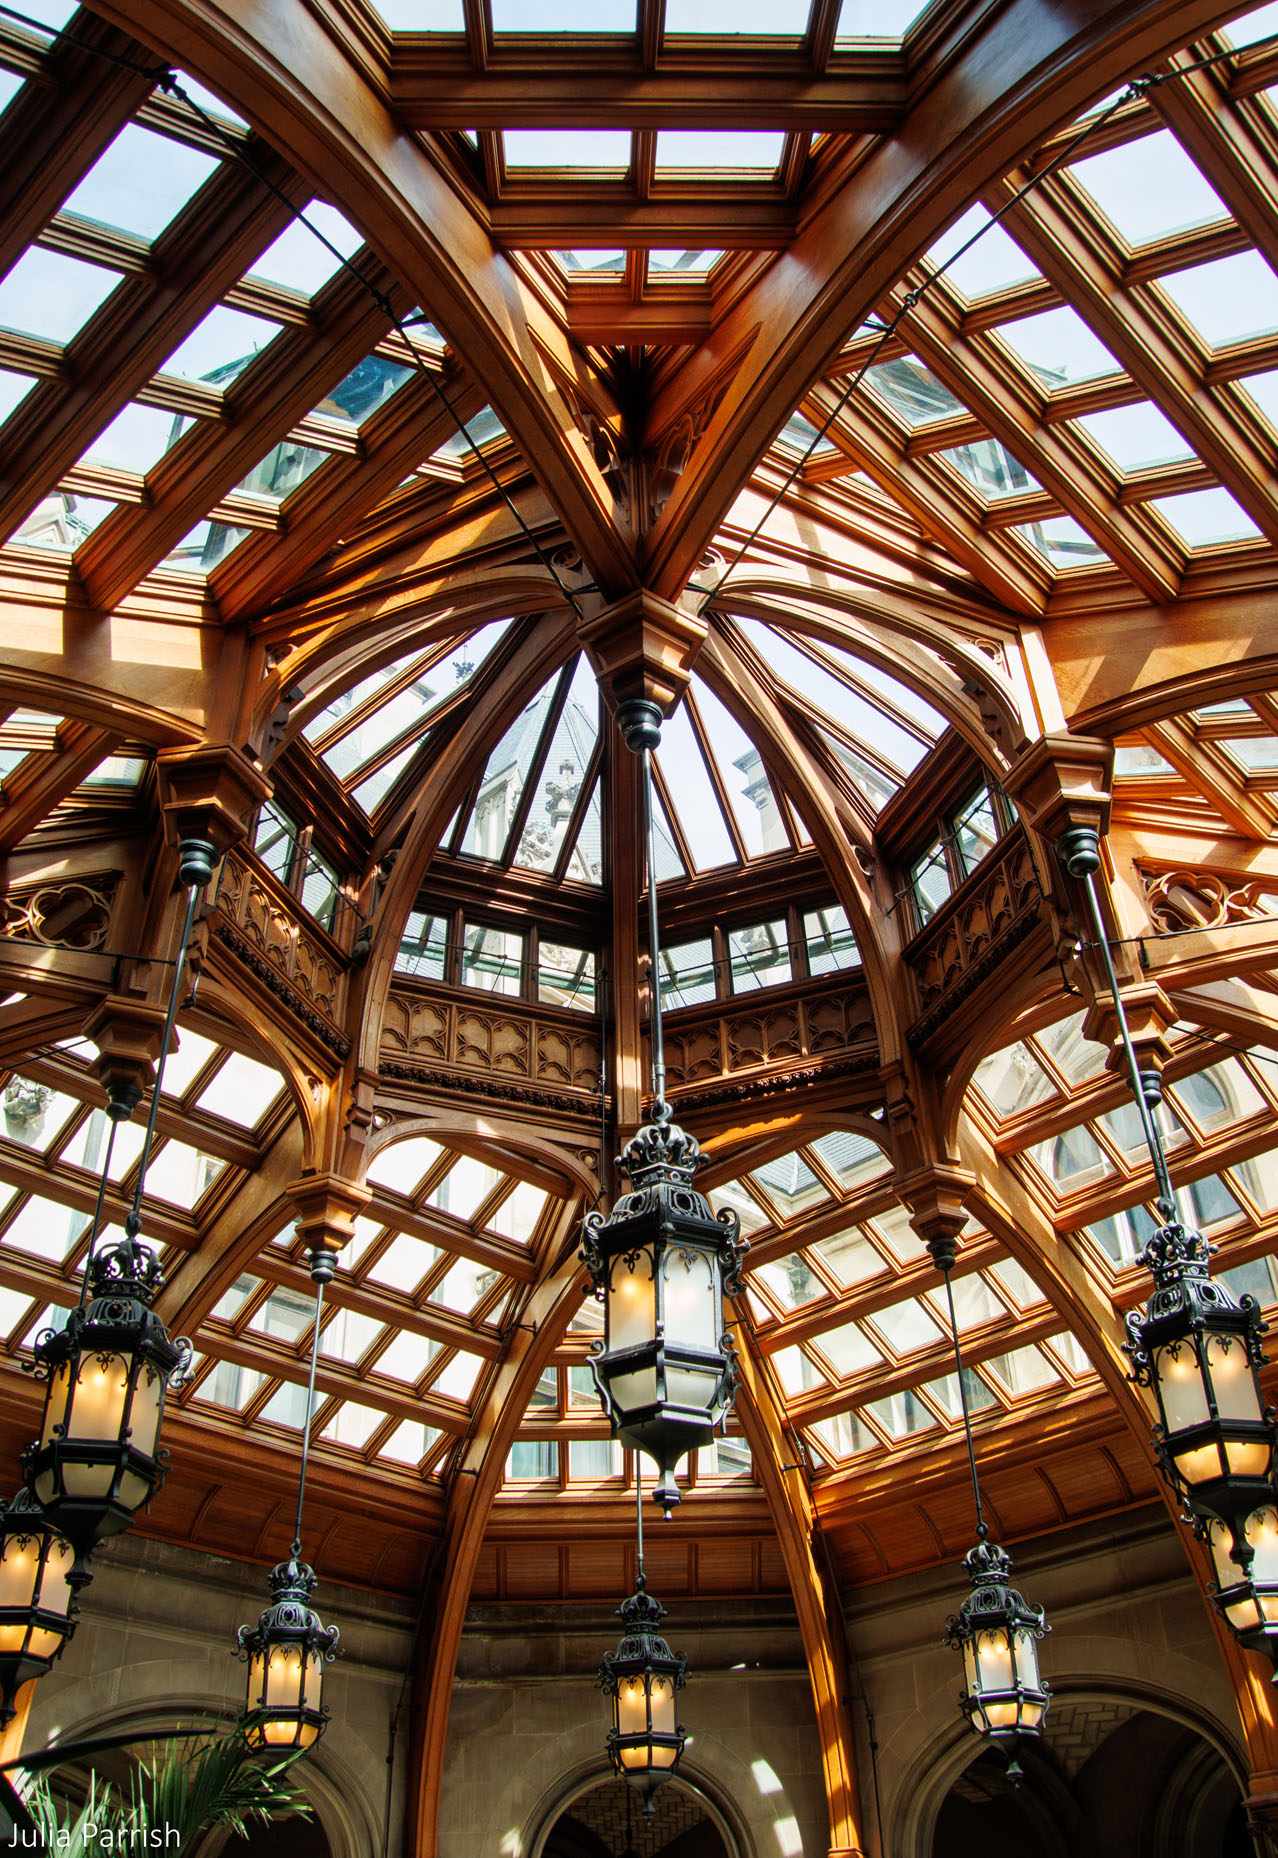 Biltmore Atrium Ceiling by Julia Parrish